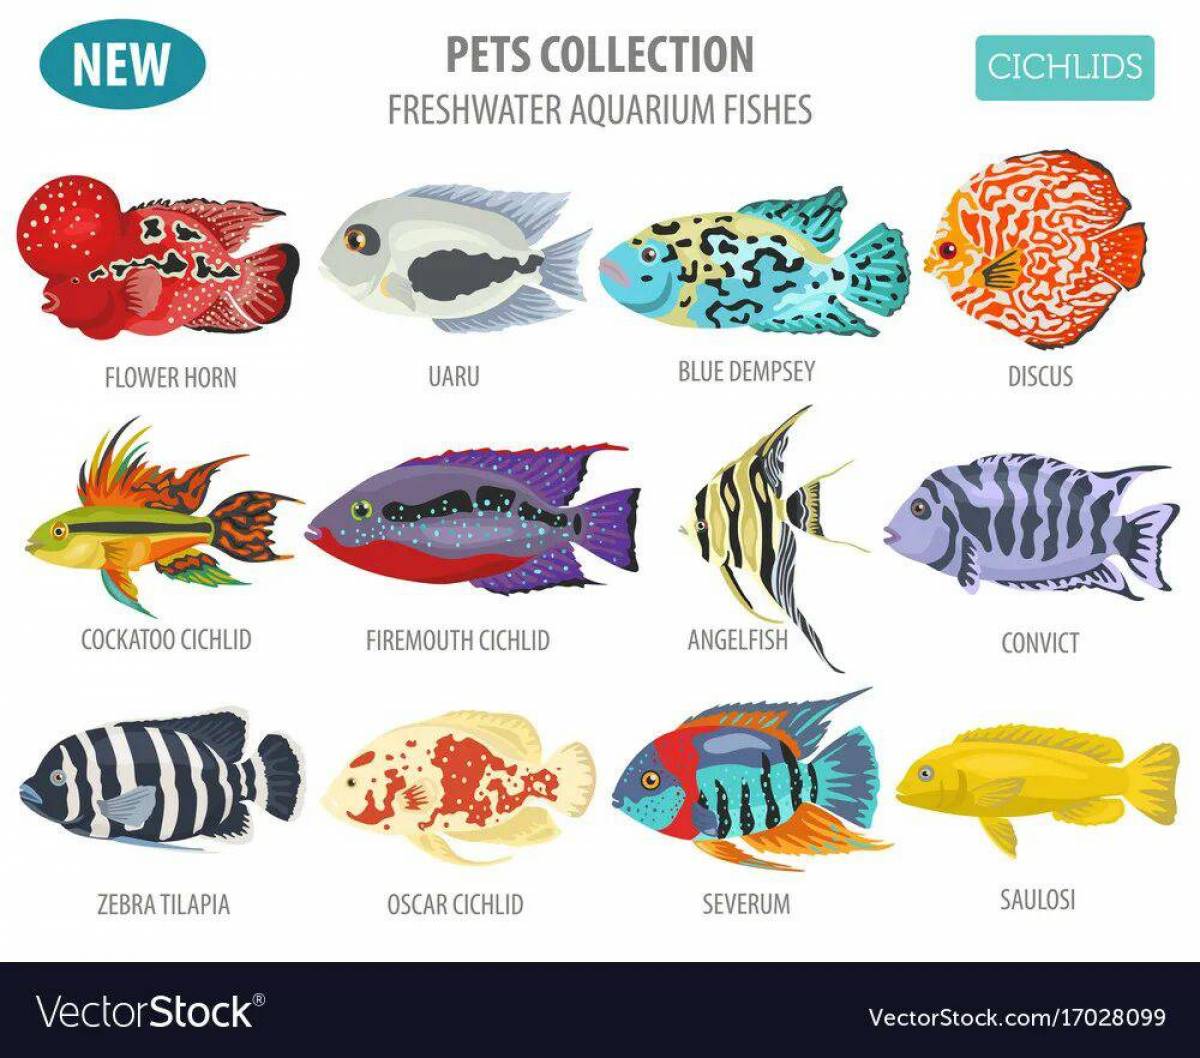 картинки рыбок с названиями